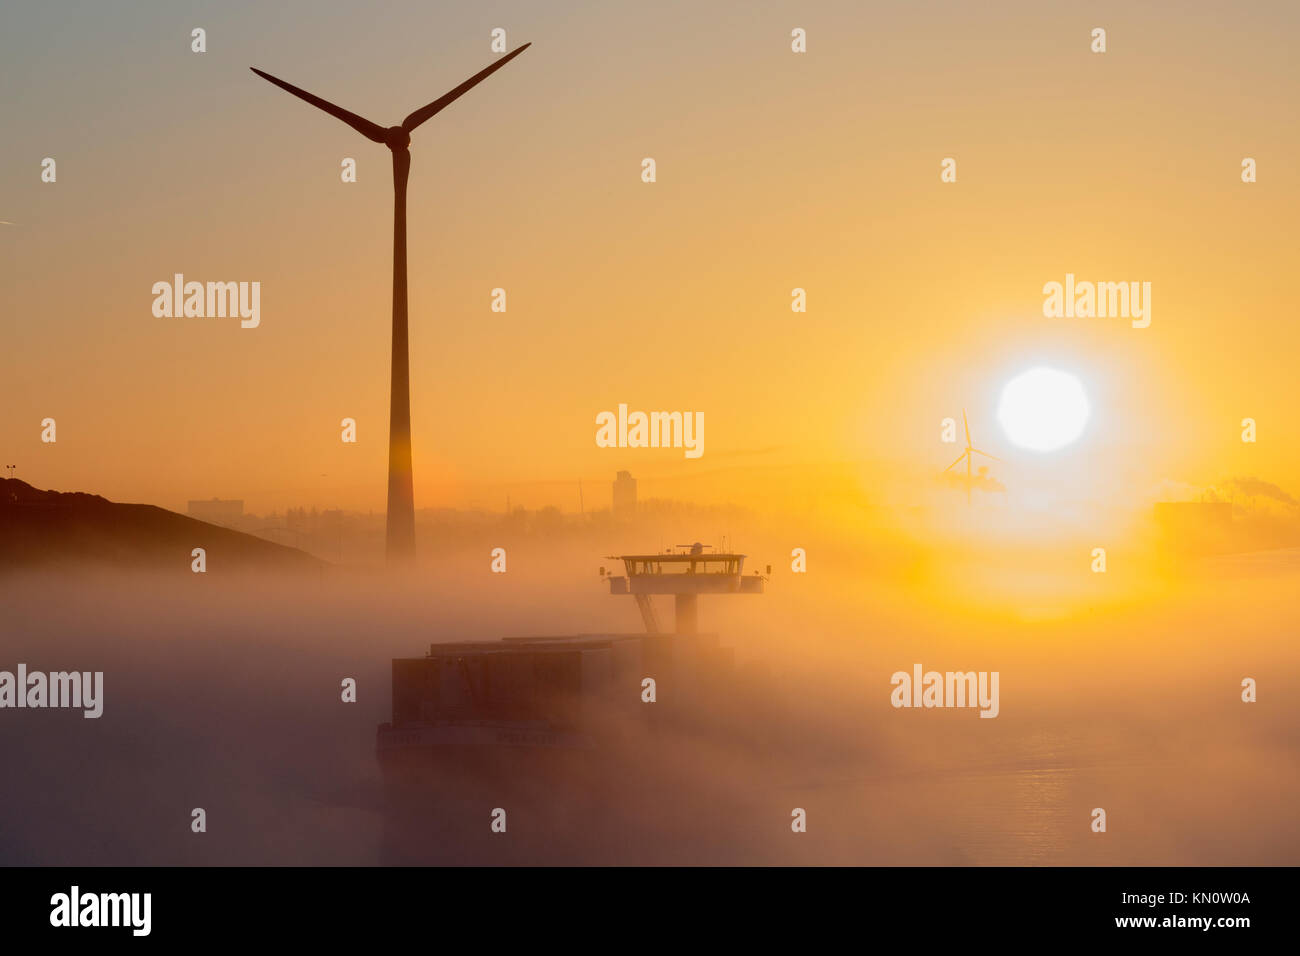 Noord-Oostzeekanaal early morning mist Stock Photo